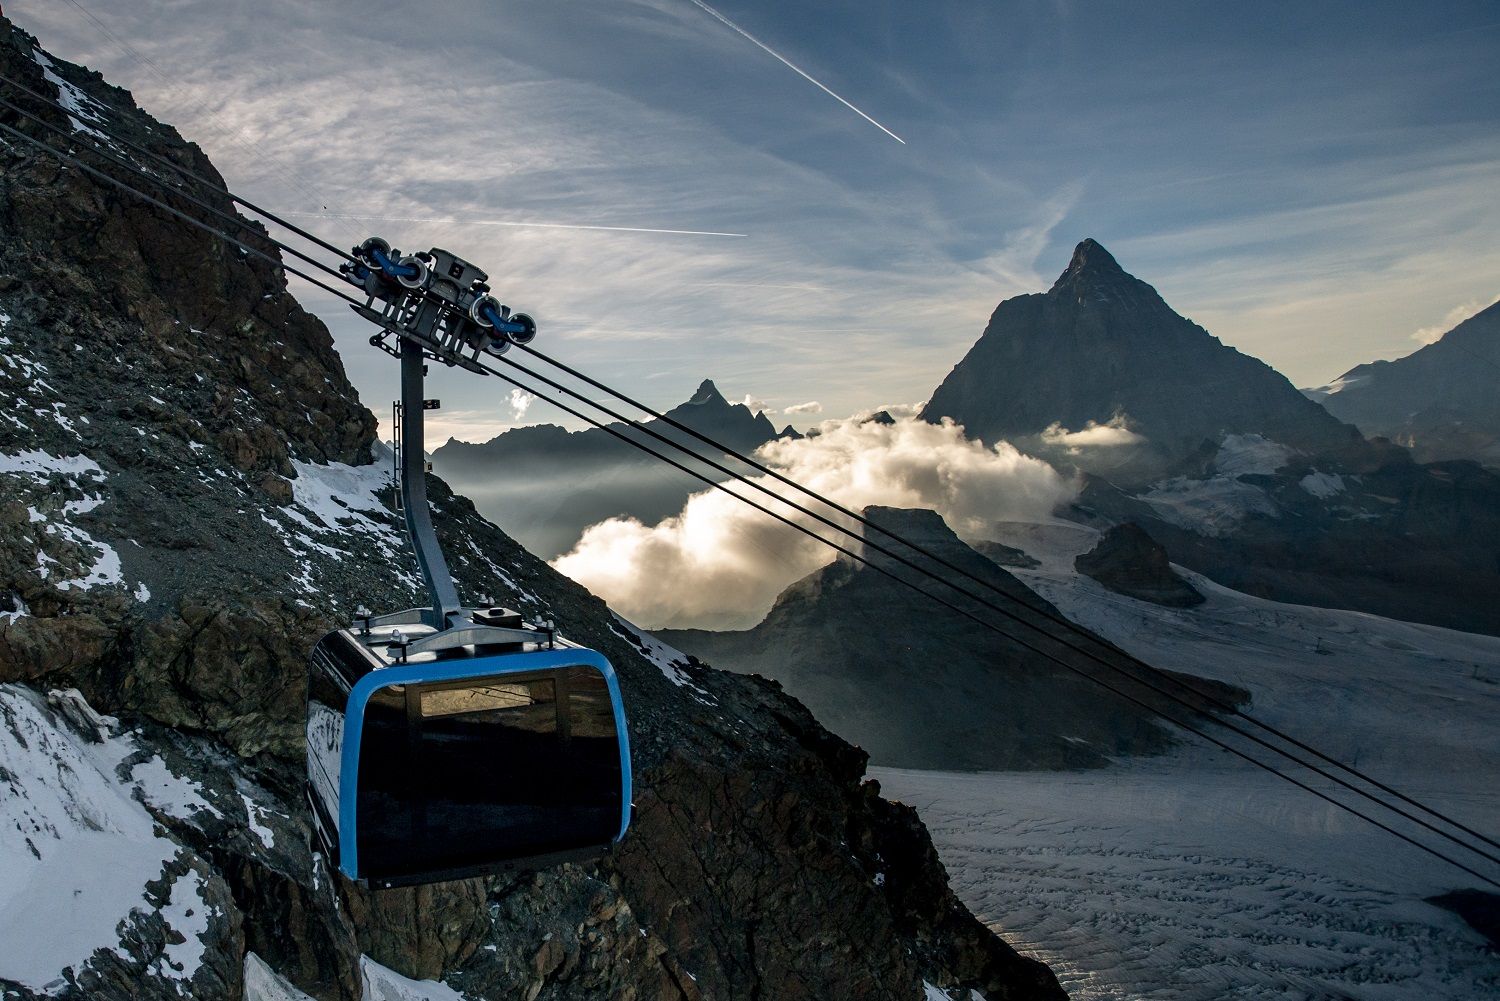 Jízda novou lanovkou Matterhorn Glacier Ride je prostě spektakulární